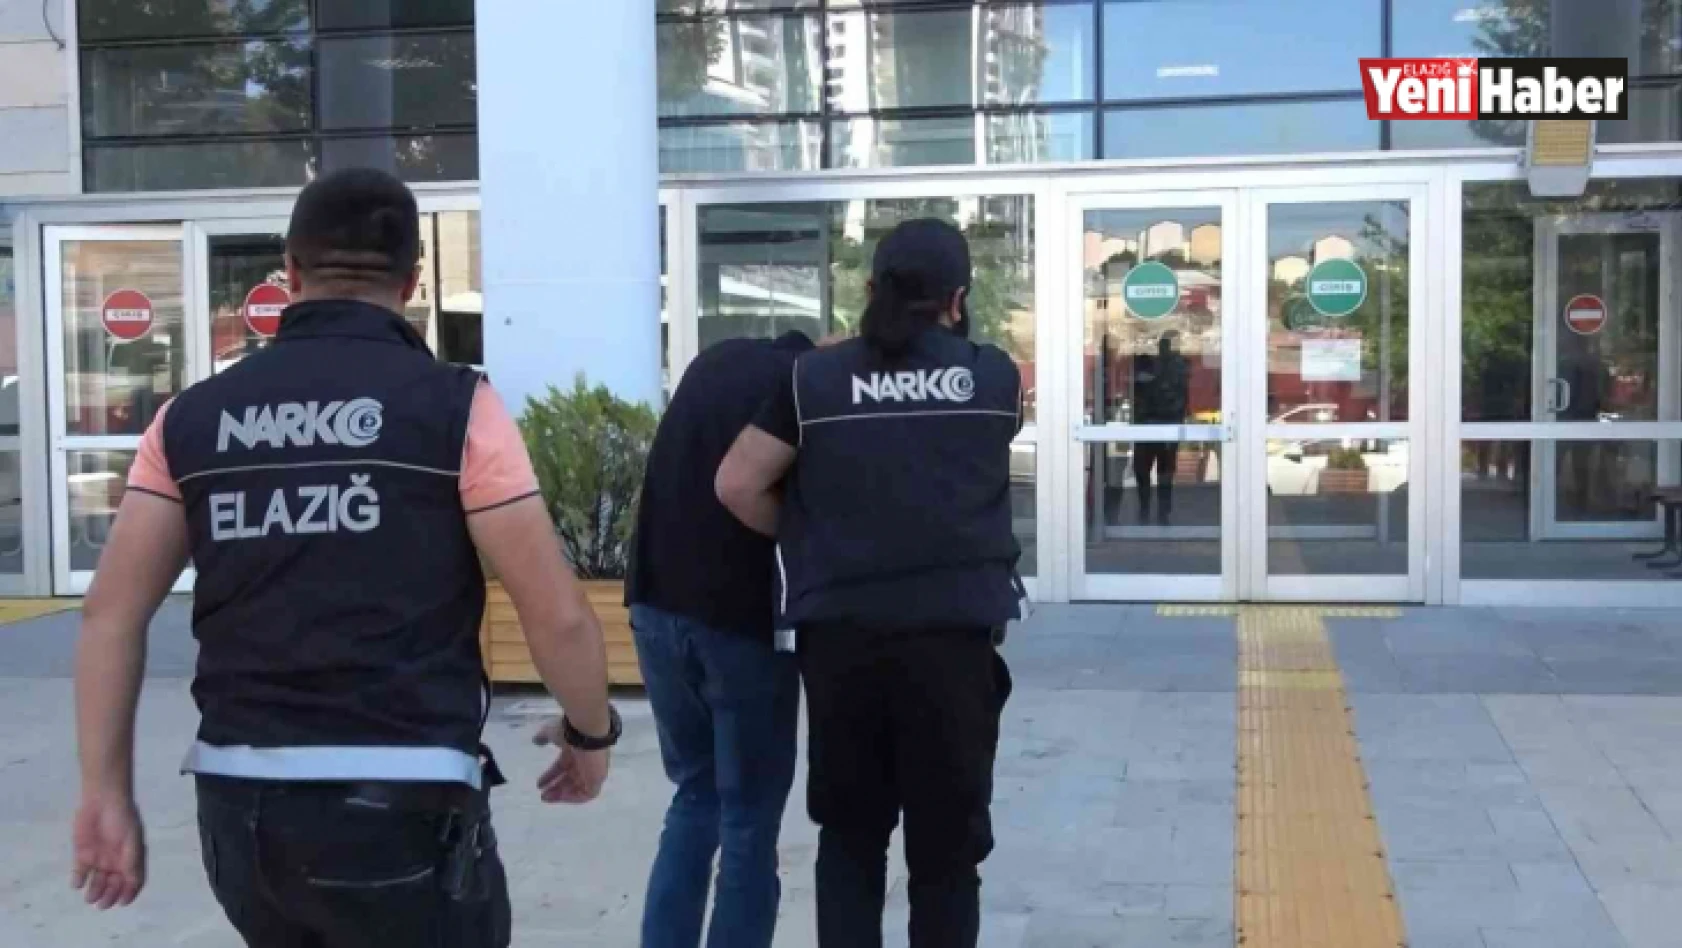 Elazığ'da uyuşturucu madde satan şüpheli yakalandı